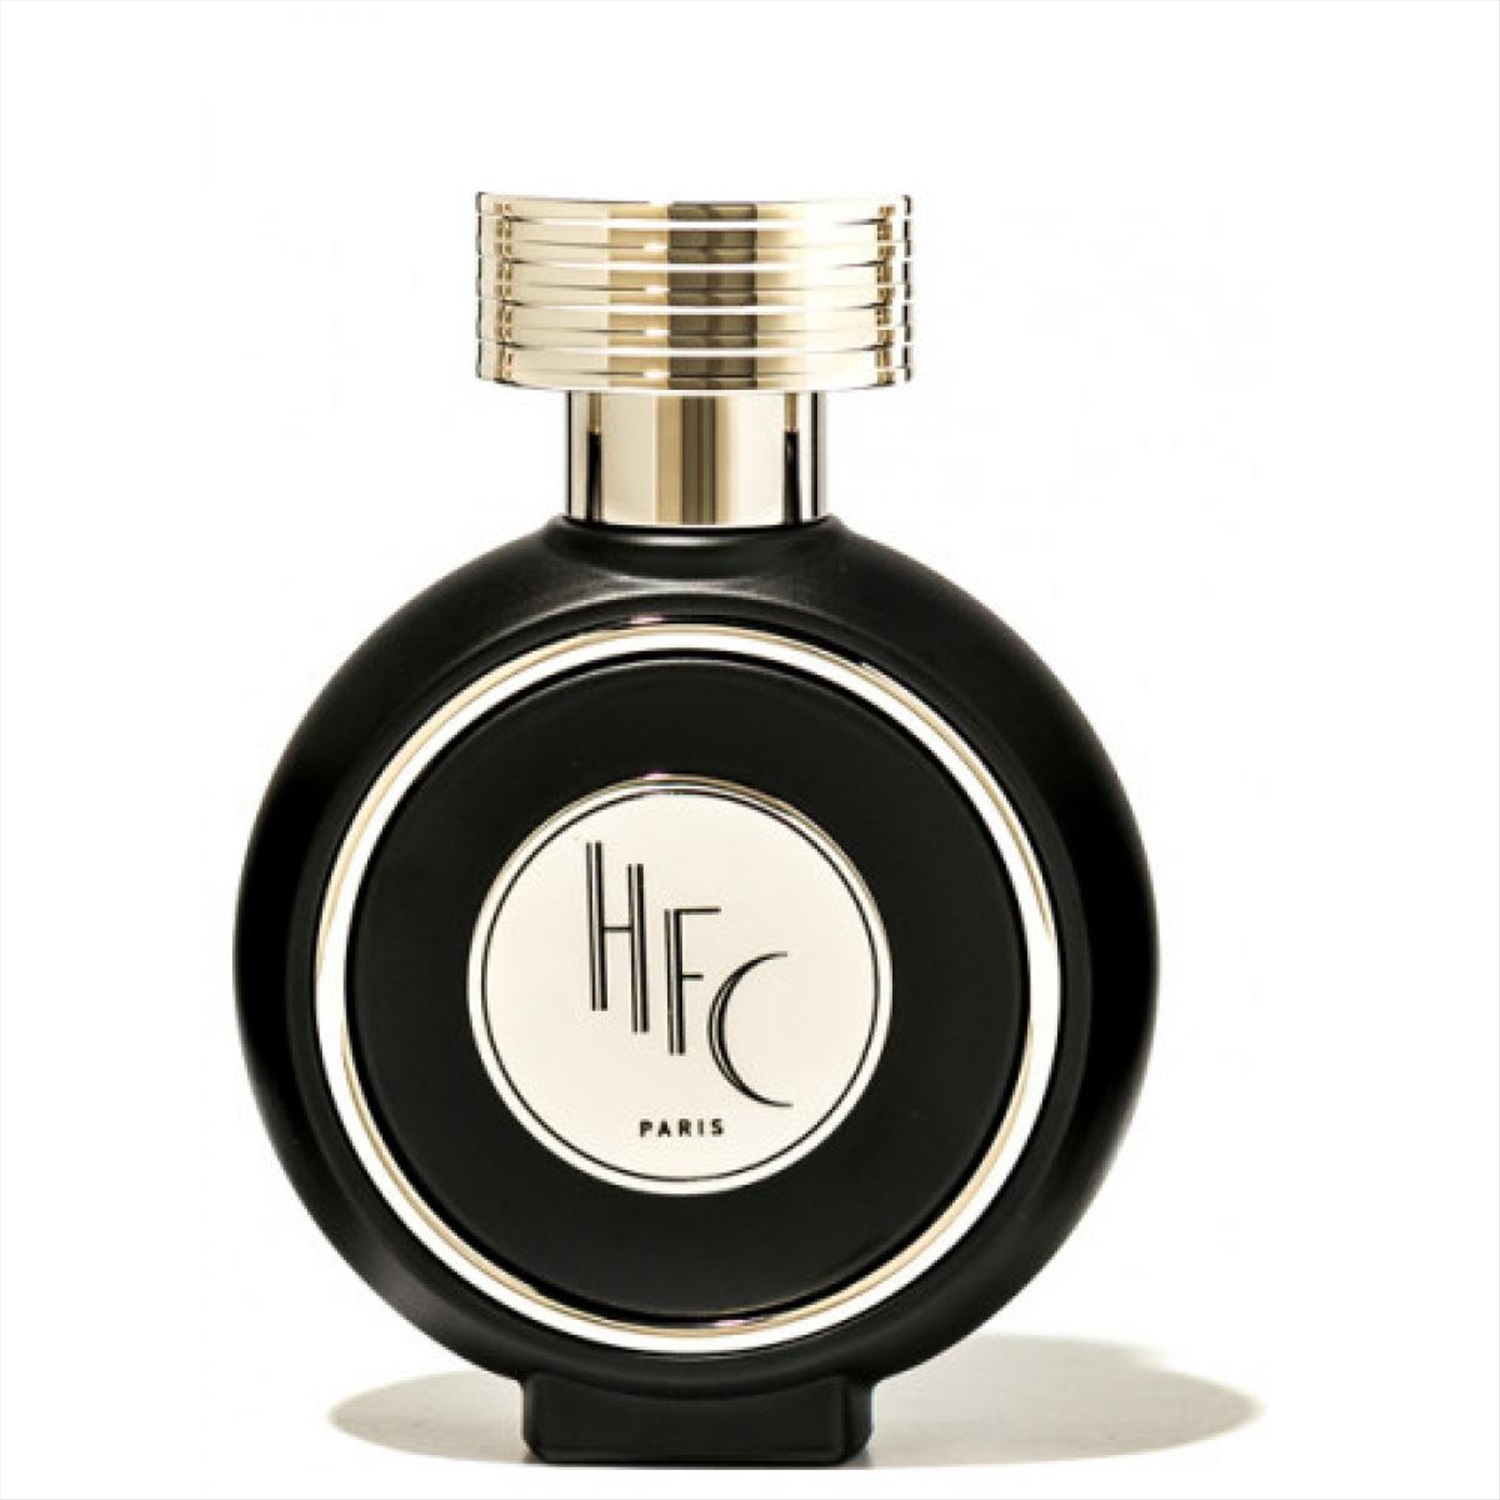 Hfc royal power. Or Noir Парфюм HFC. Haute Fragrance Company духи. Парфюмерная вода Haute Fragrance Company Black Orris. Haute Fragrance Company 75 мл.